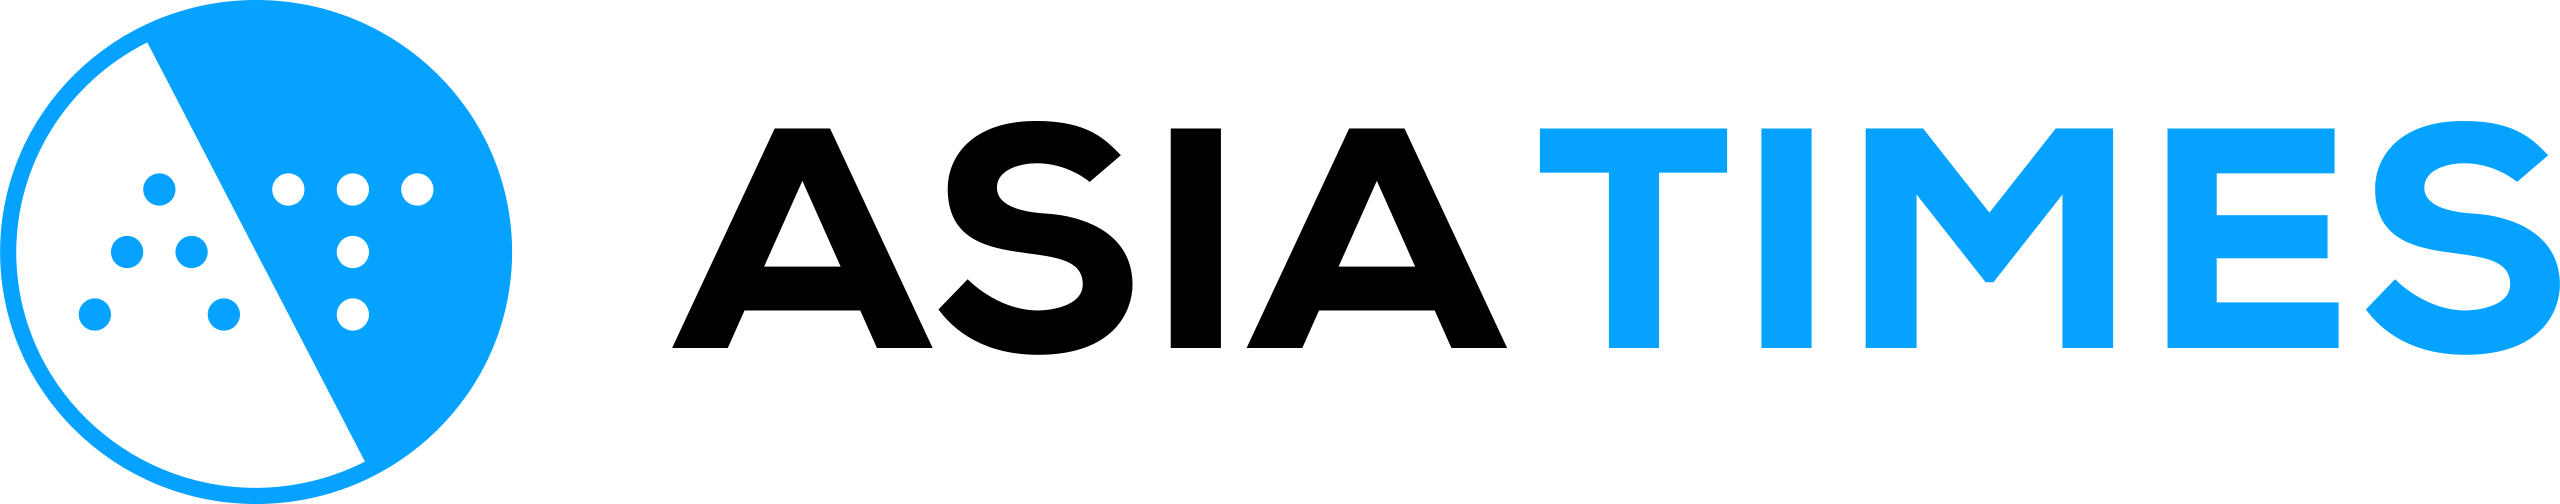 Asia Times logo